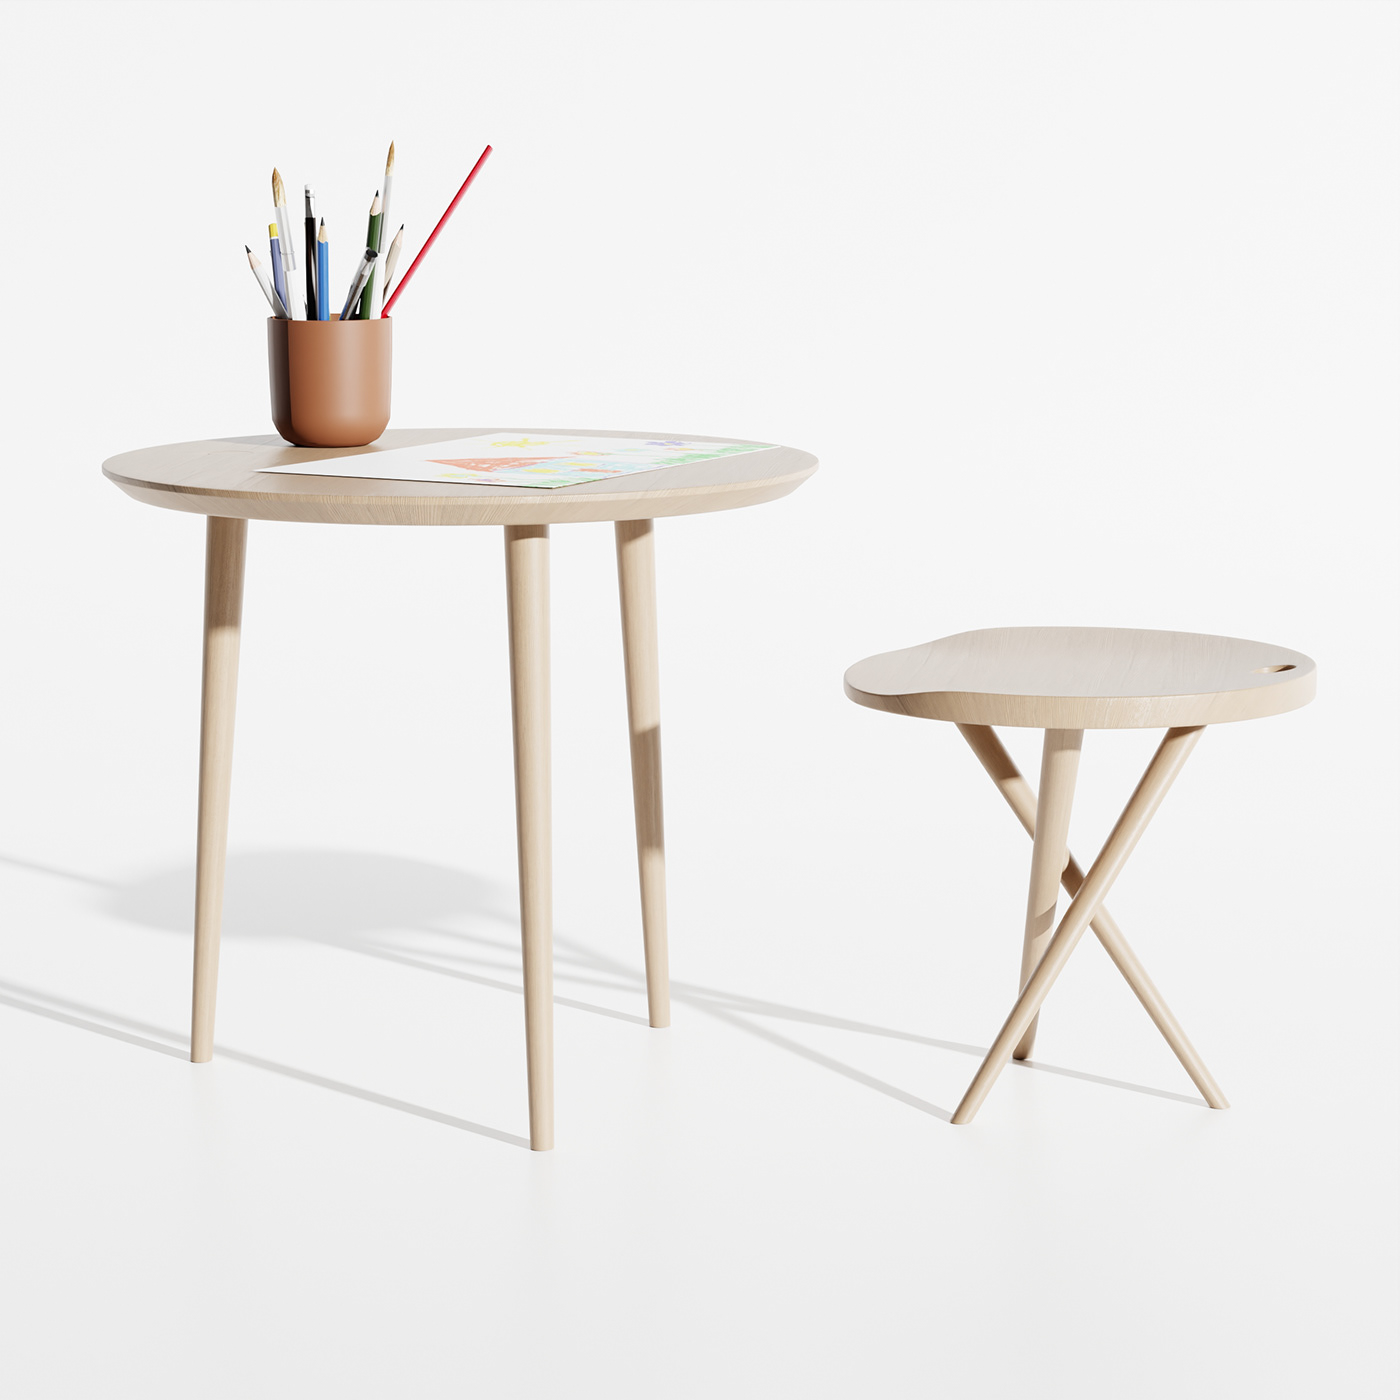 blender design designer furniture interior design  living room product design  Render side table wood